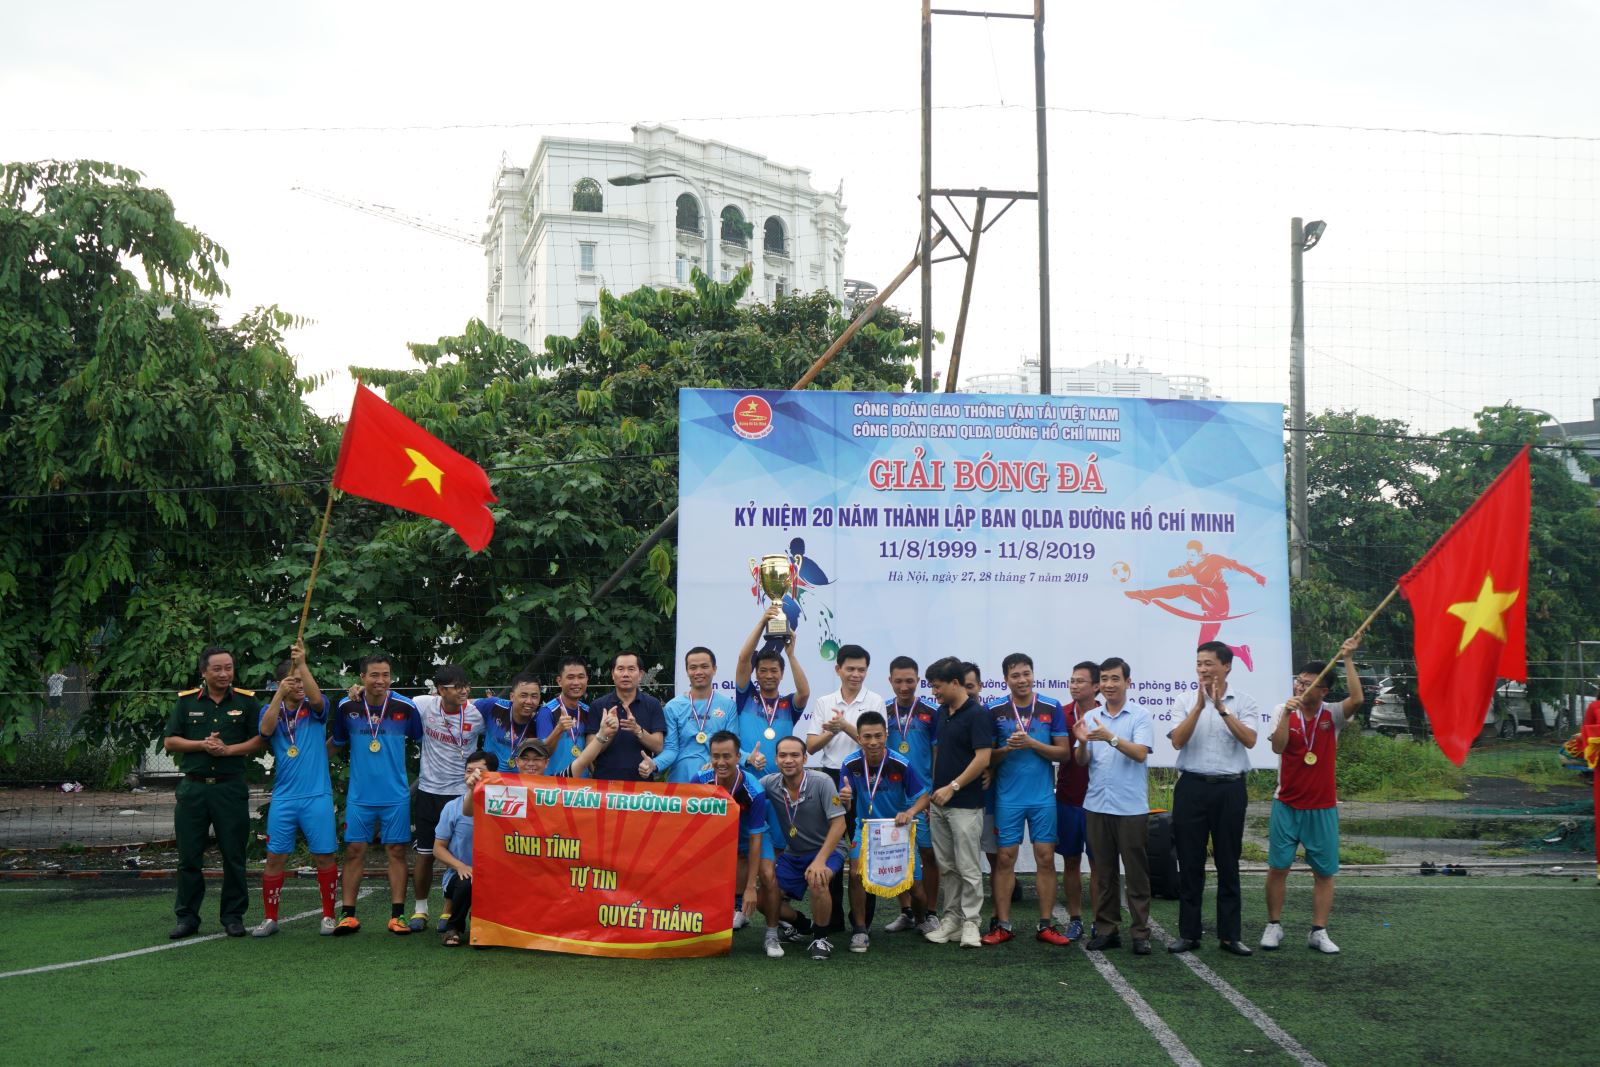 Vô địch giải bóng đá kỷ niệm 20 năm thành lập Ban QLDA đường Hồ Chí Minh 4